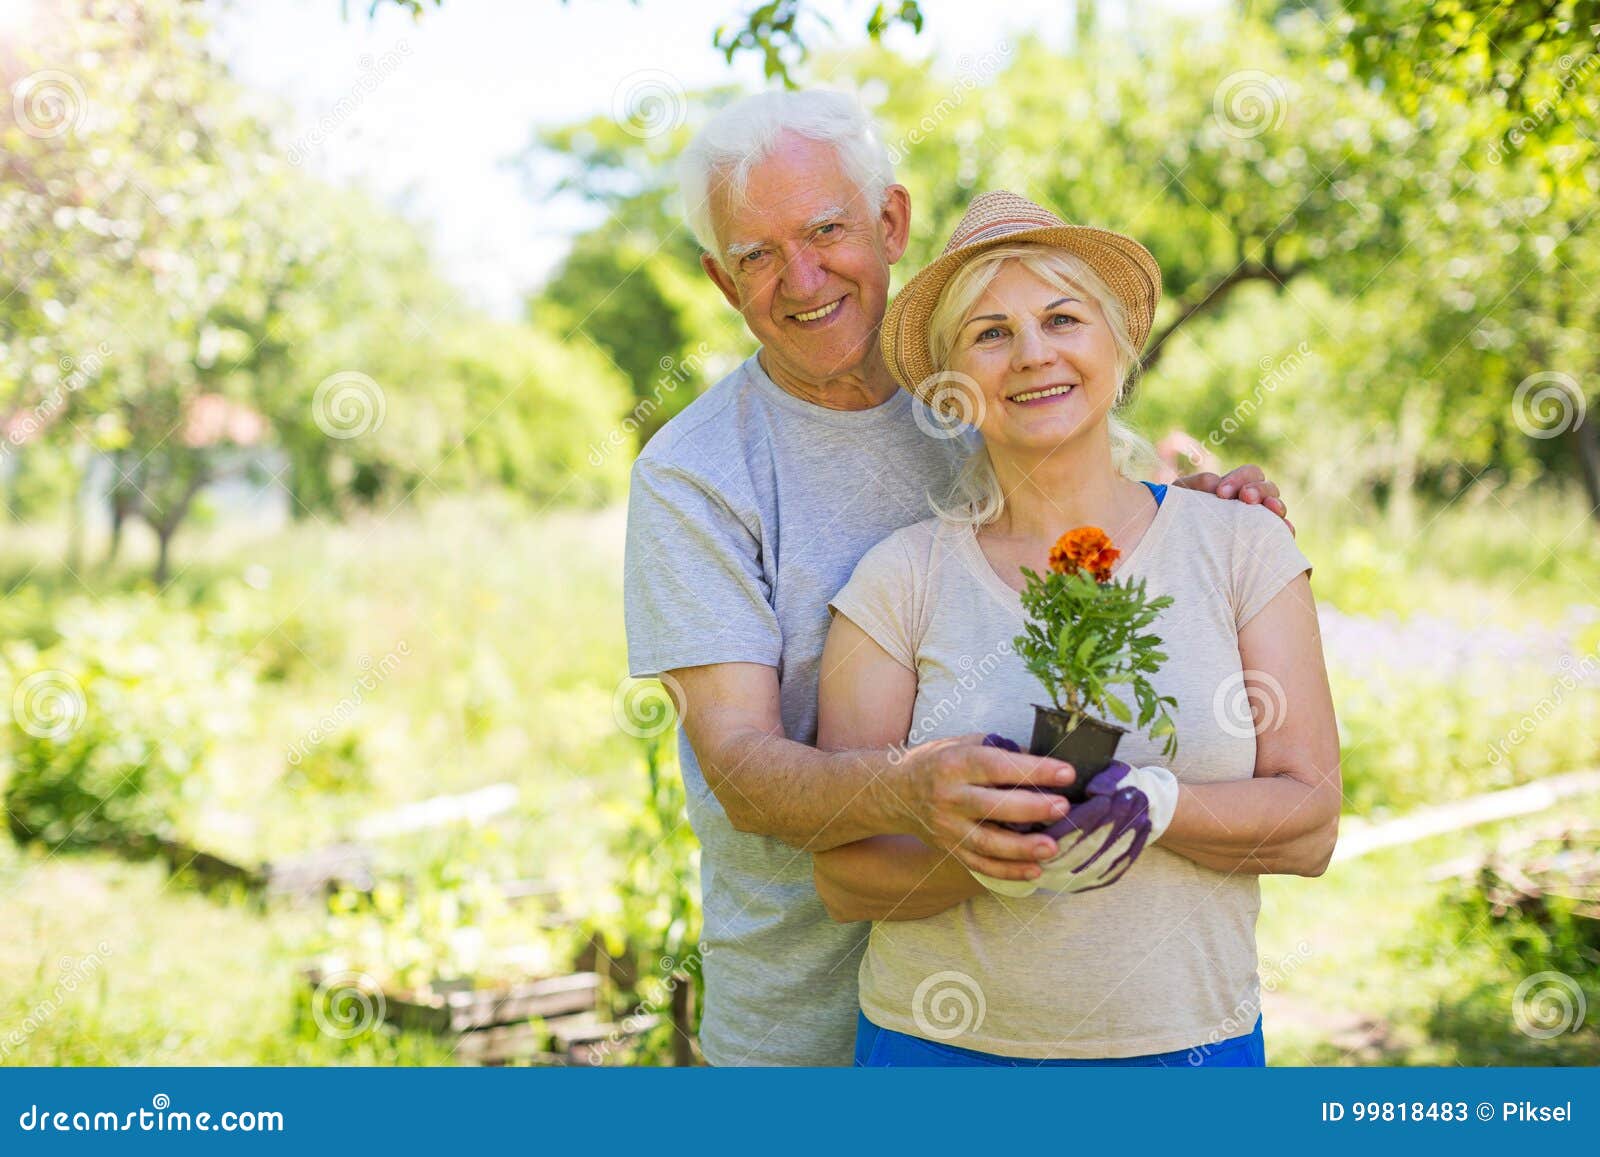 Senior couple gardening stock image. Image of happiness - 99818483